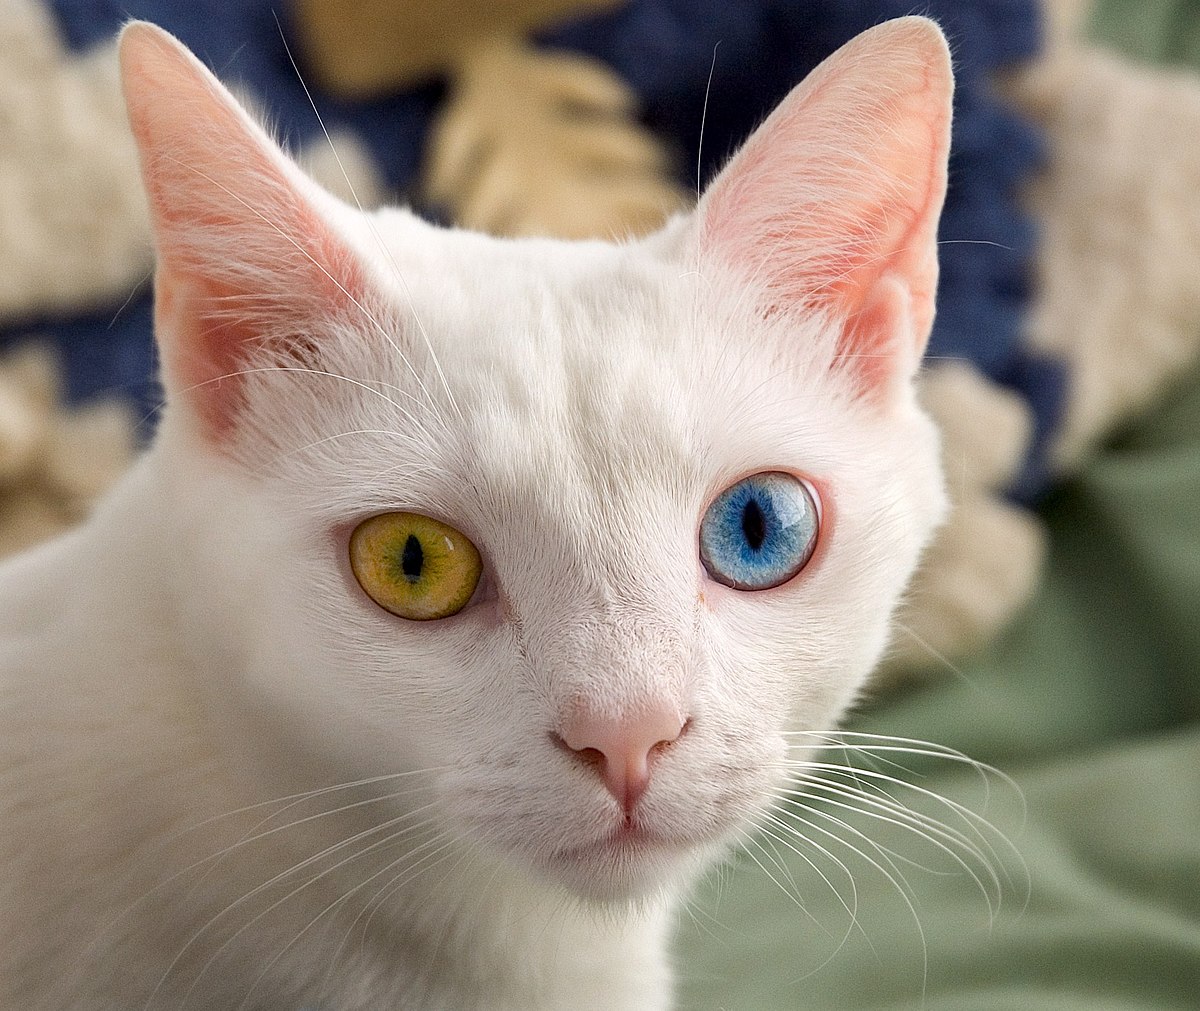 Odd-eyed cat - Wikipedia